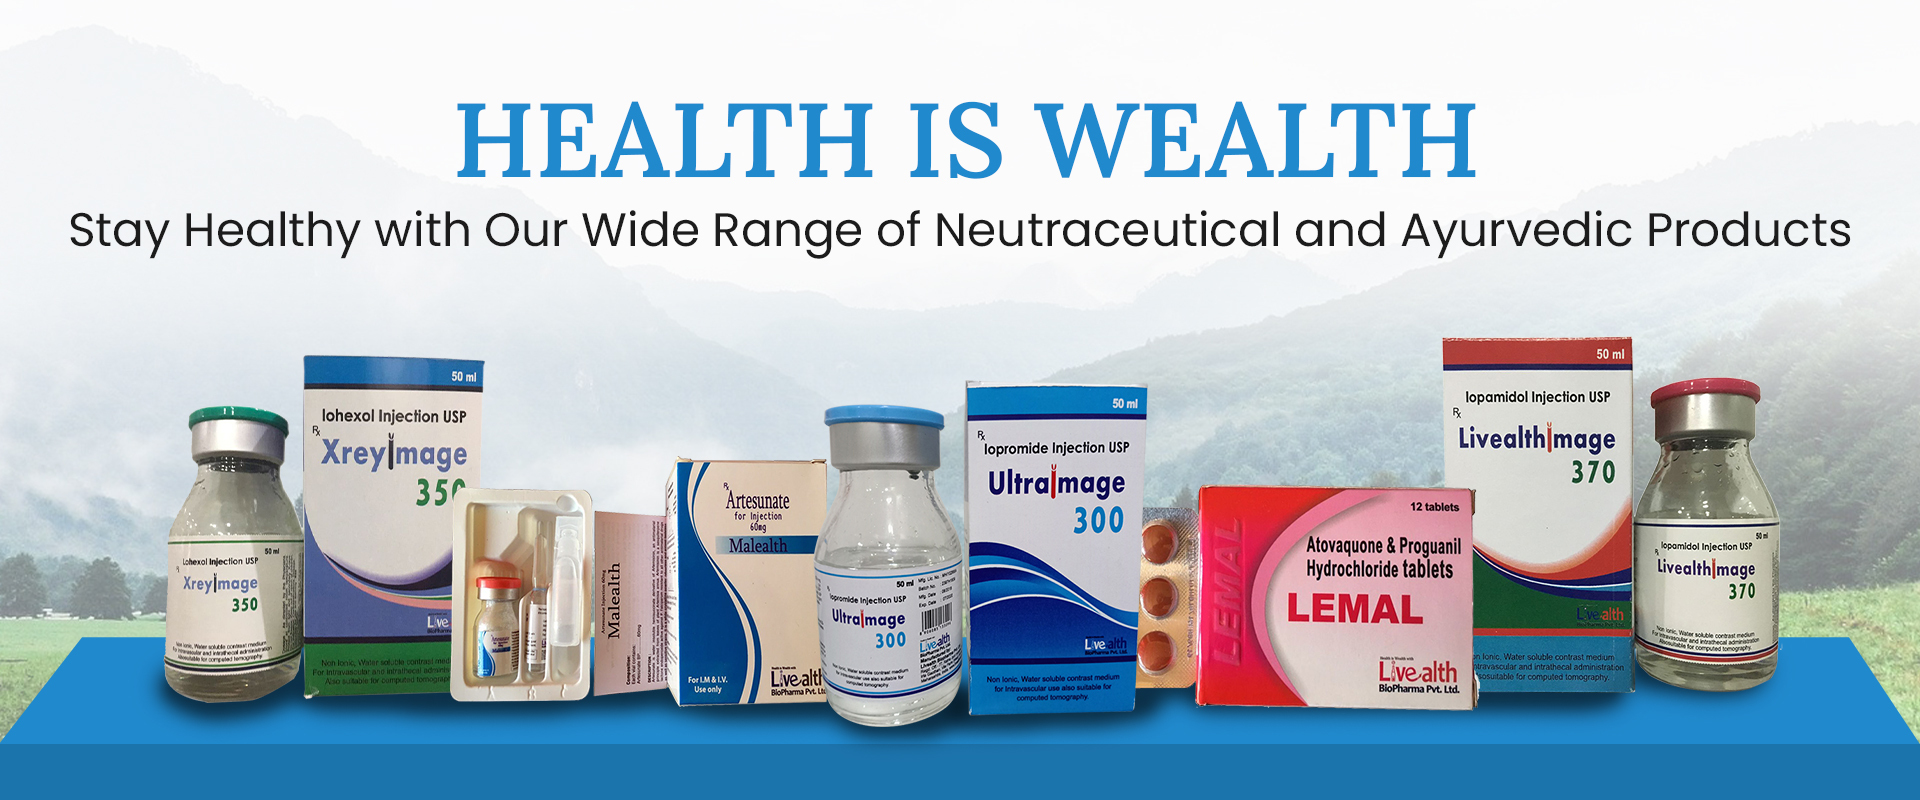 generic medicines supplier india